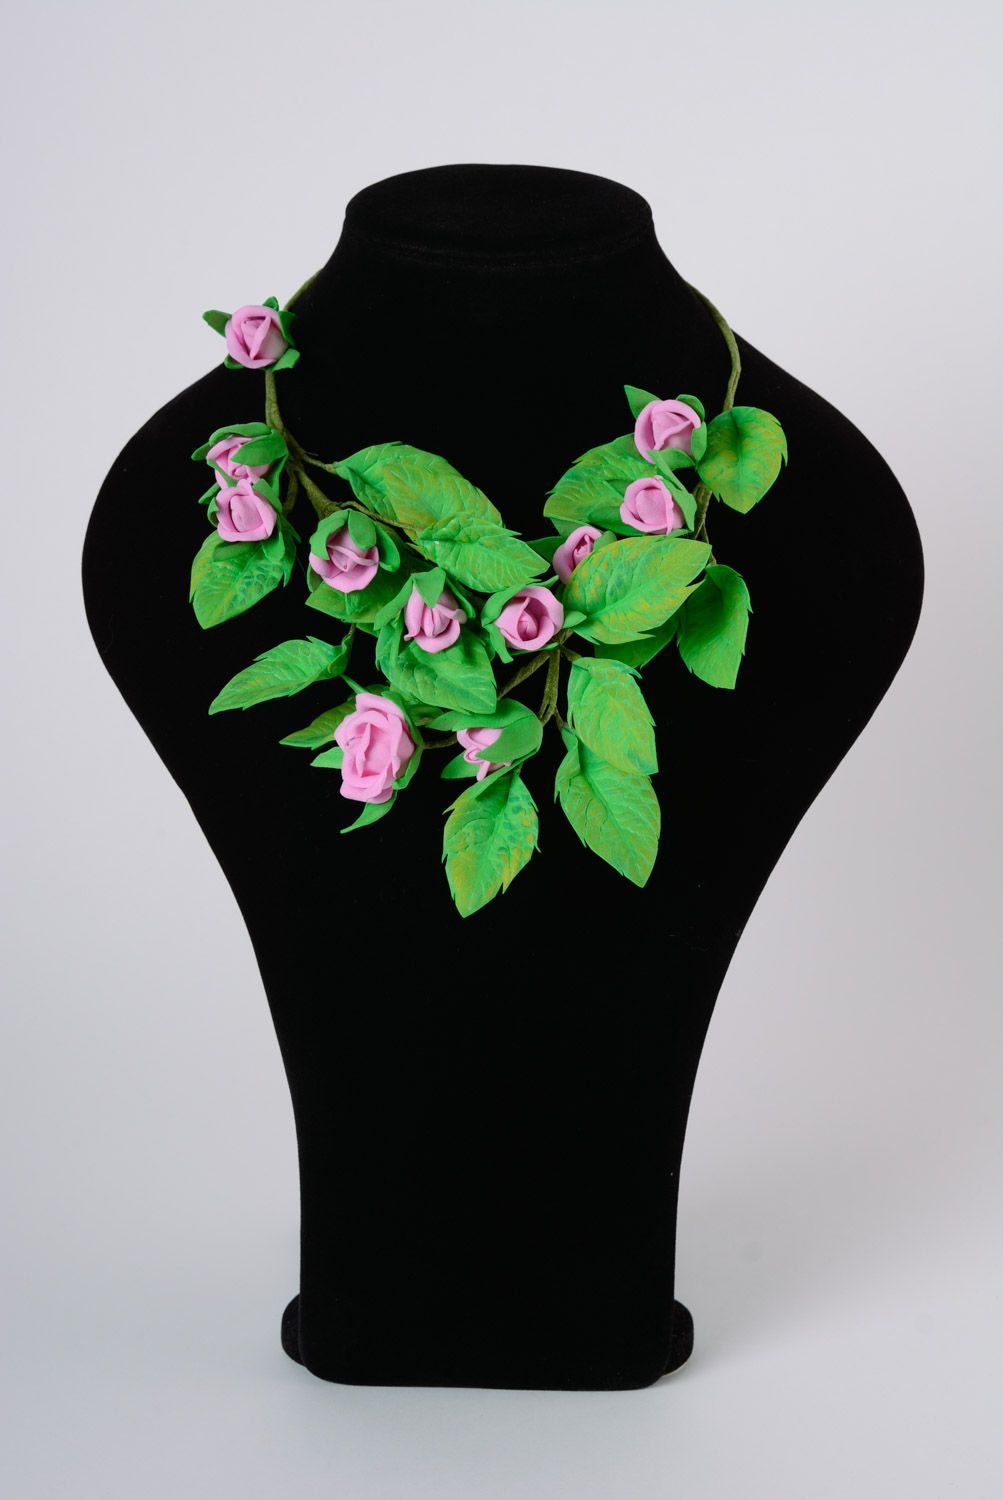 Колье из пластичной замши ручной работы цветочное зеленое с сиреневыми розами фото 1